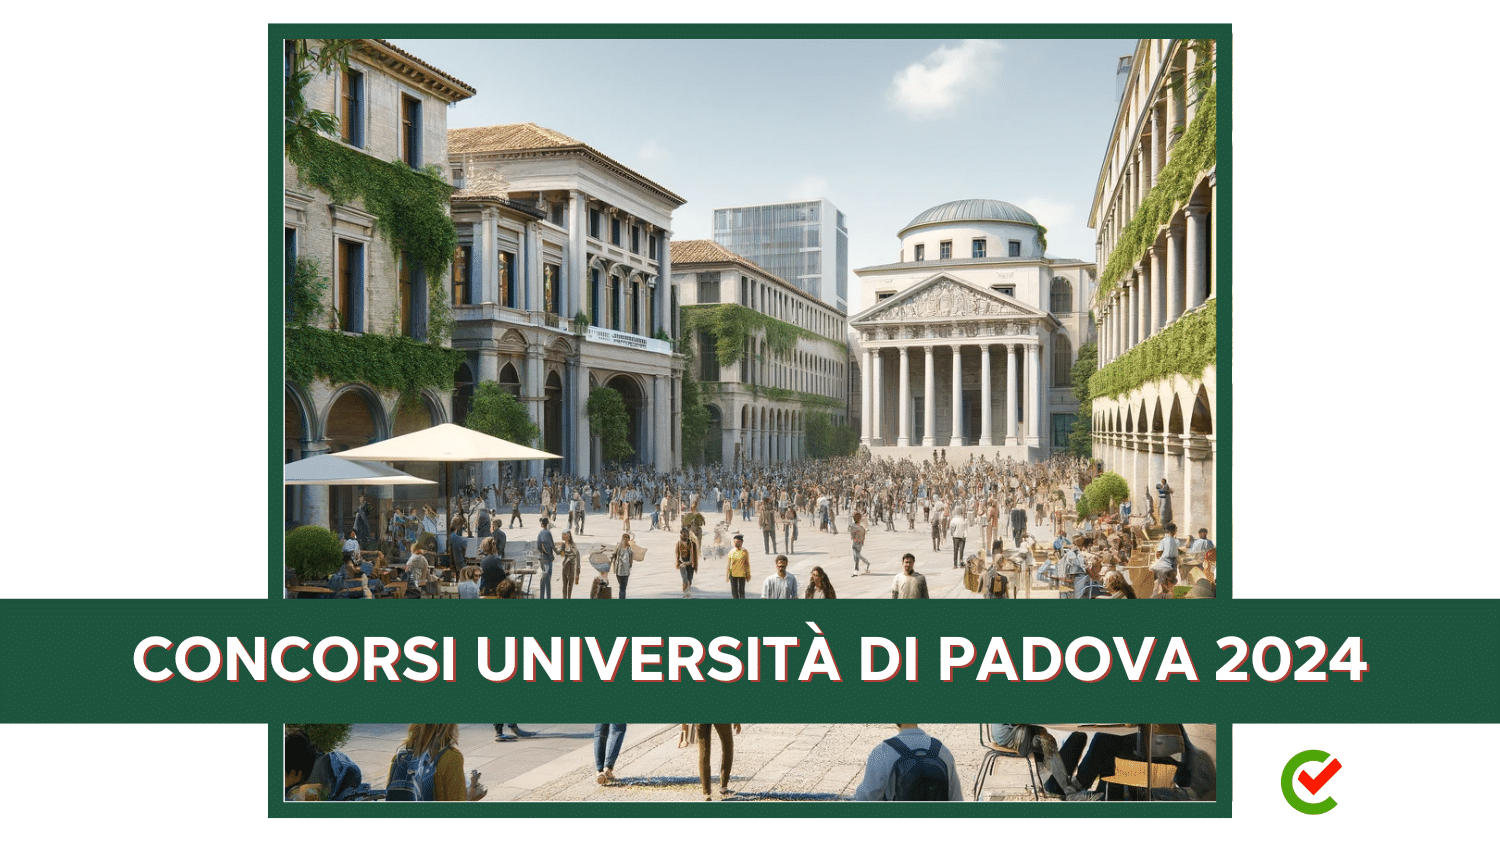 Concorsi Università degli studi di Padova 2024 - 30 posti 